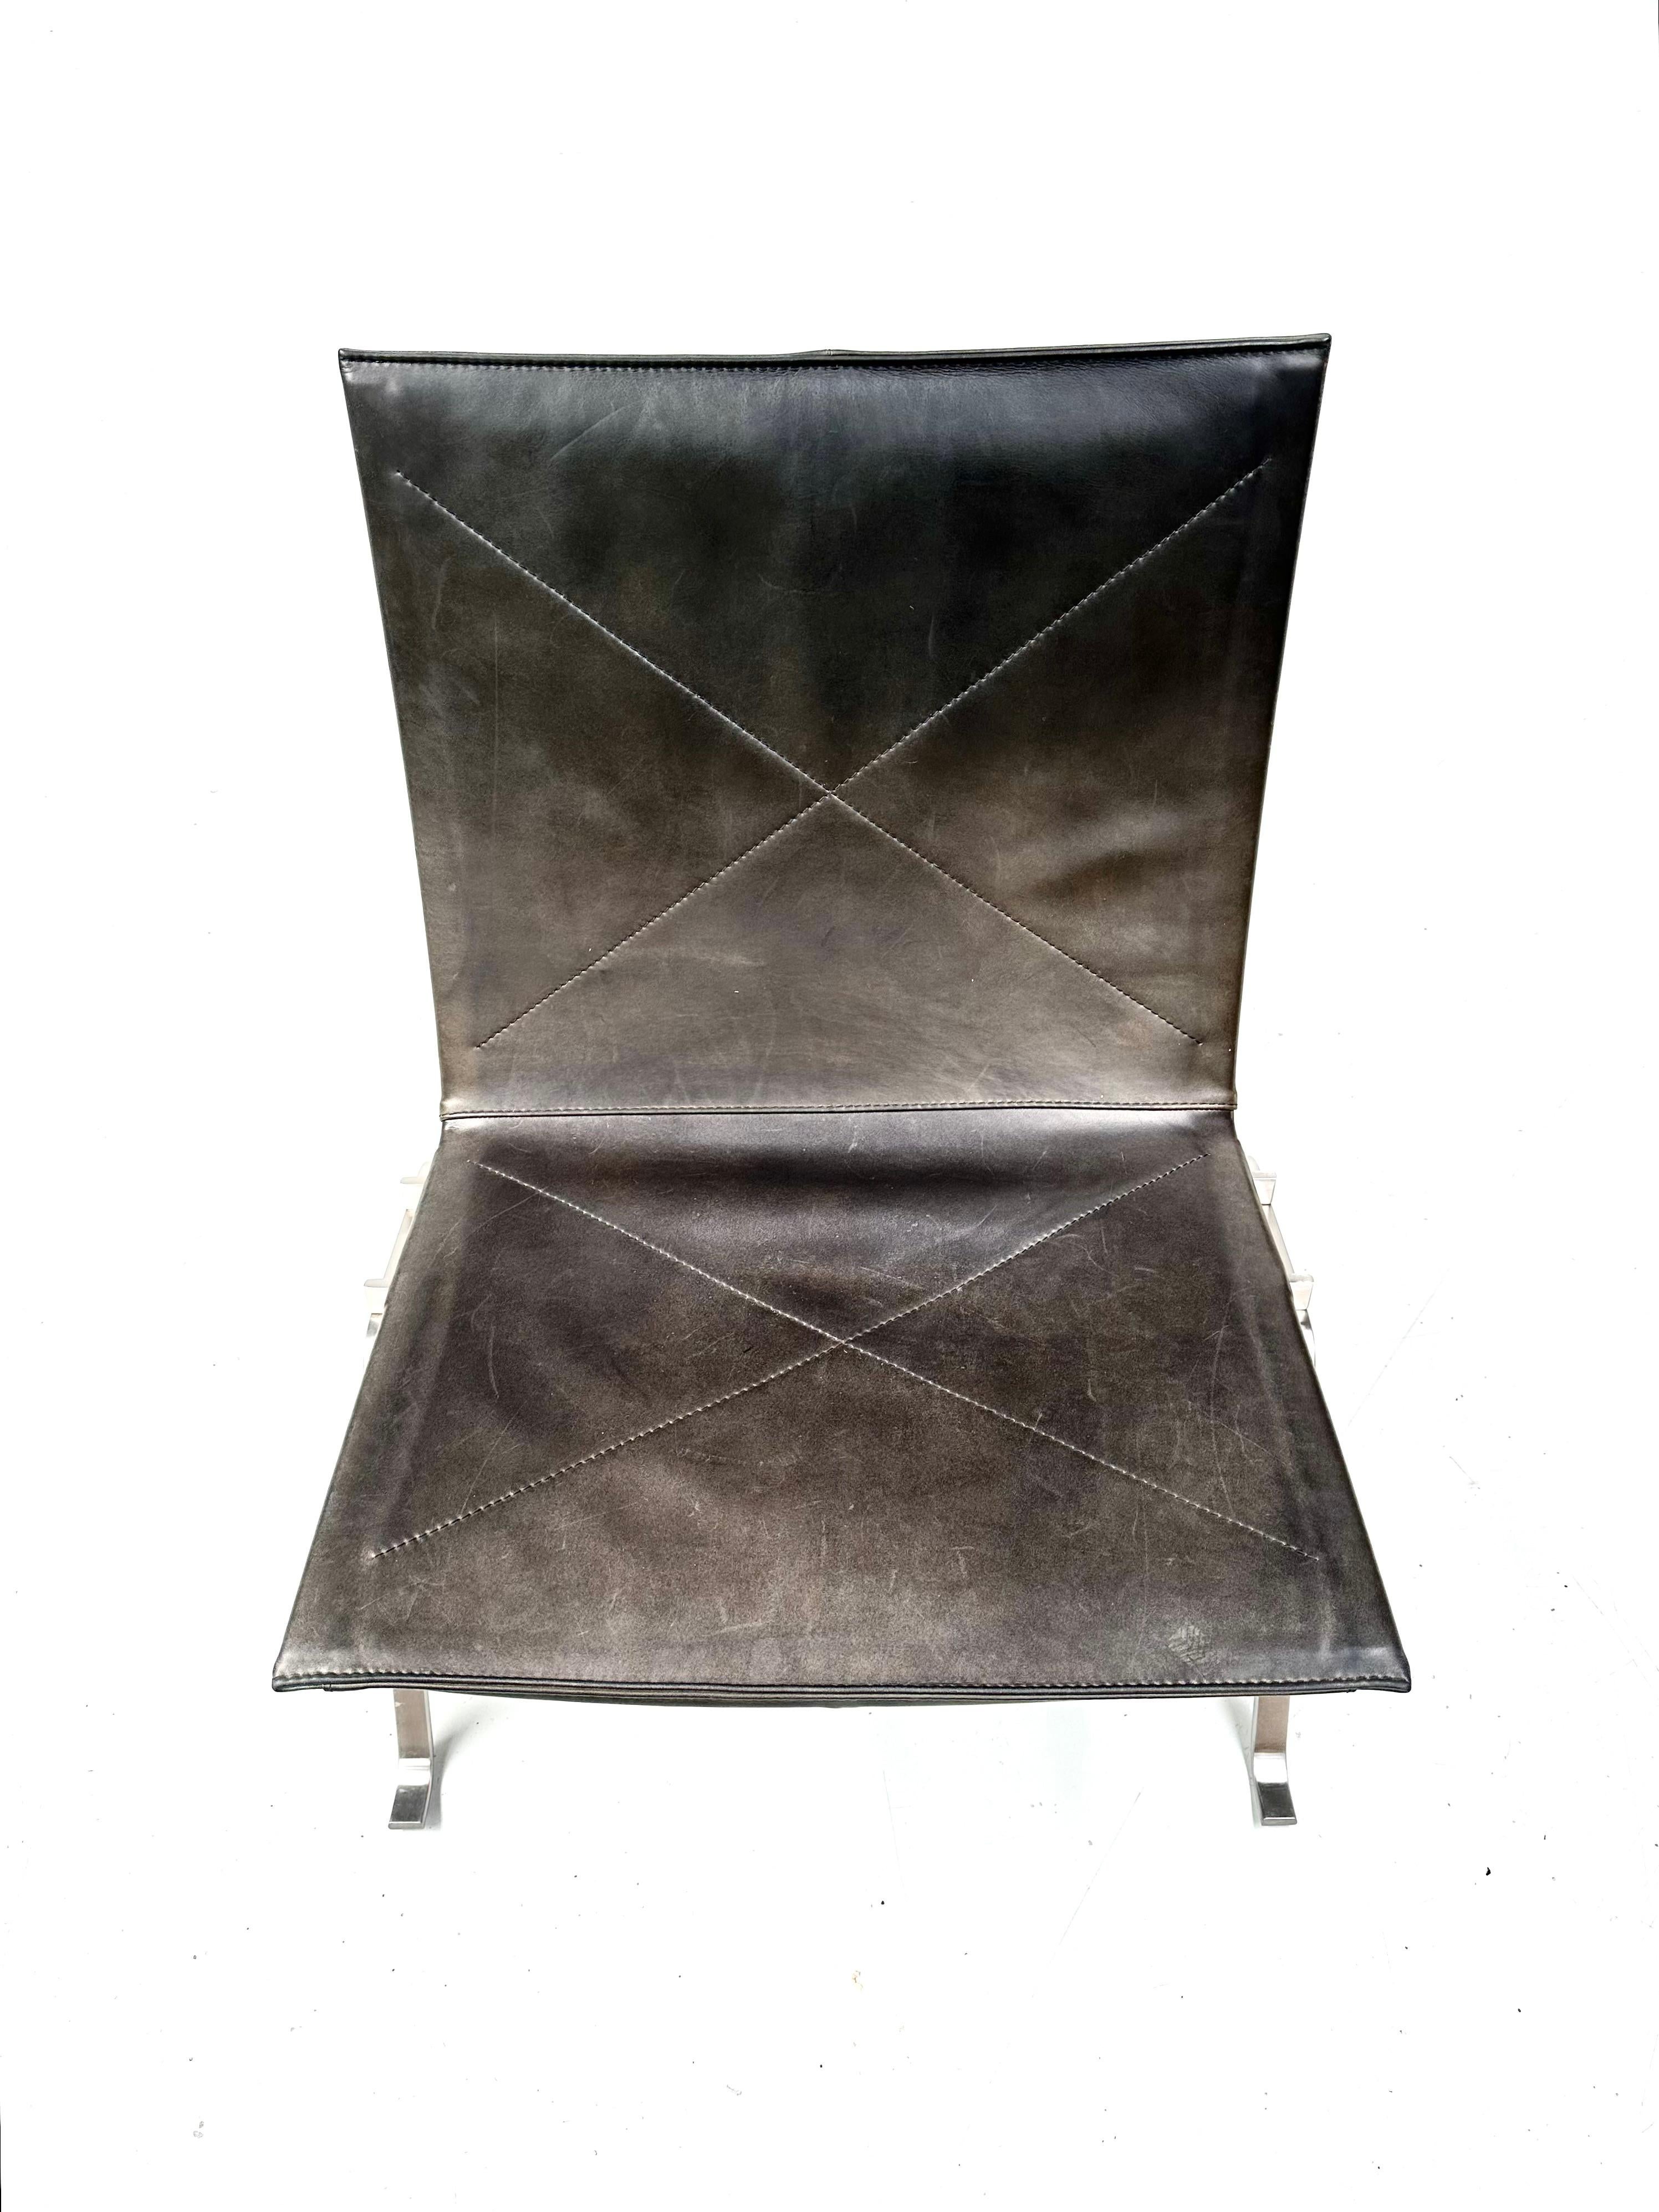 Scandinavian Modern Danish Black Leather PK22 Easy Chair by Poul Kjærholm for Fritz Hansen.